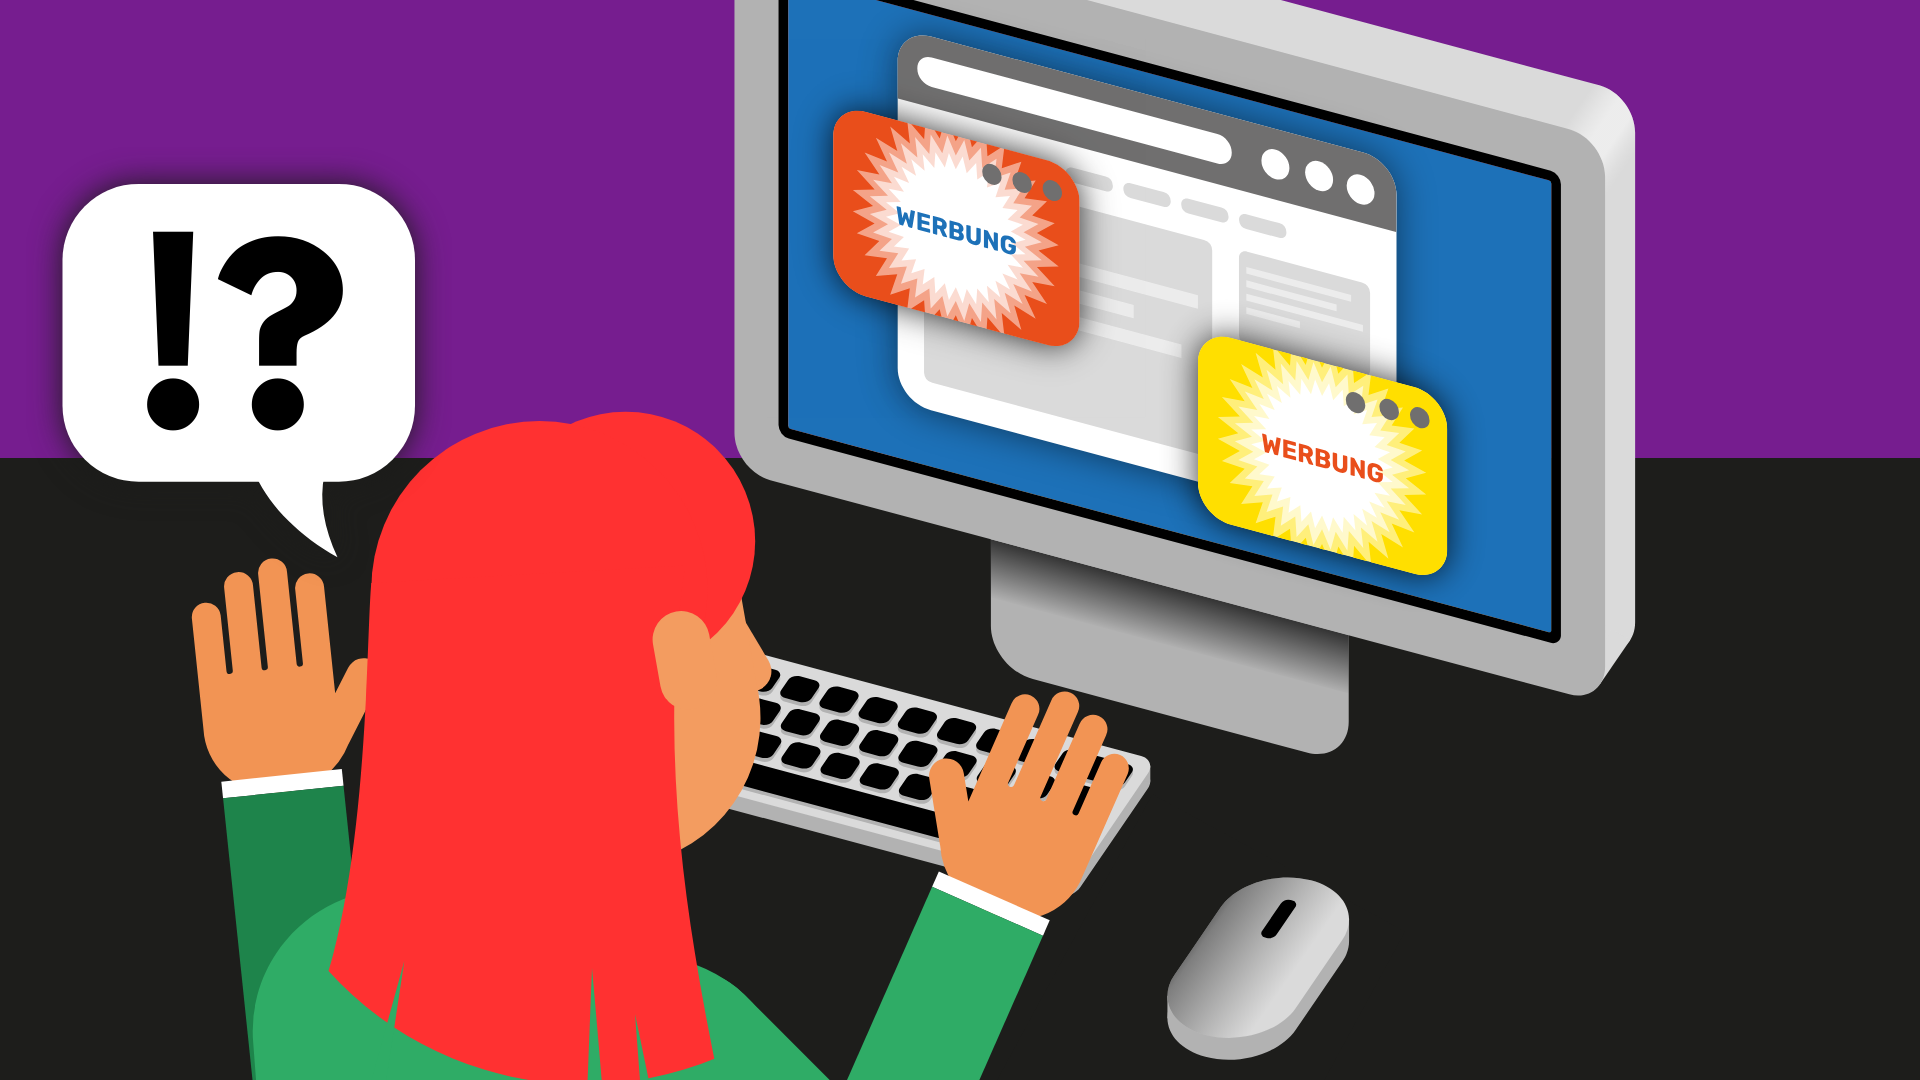 Eine Frau sitzt an einem Computer und ist verwirrt. Der Bildschirm zeigt zwei Pop-ups mit Werbung.